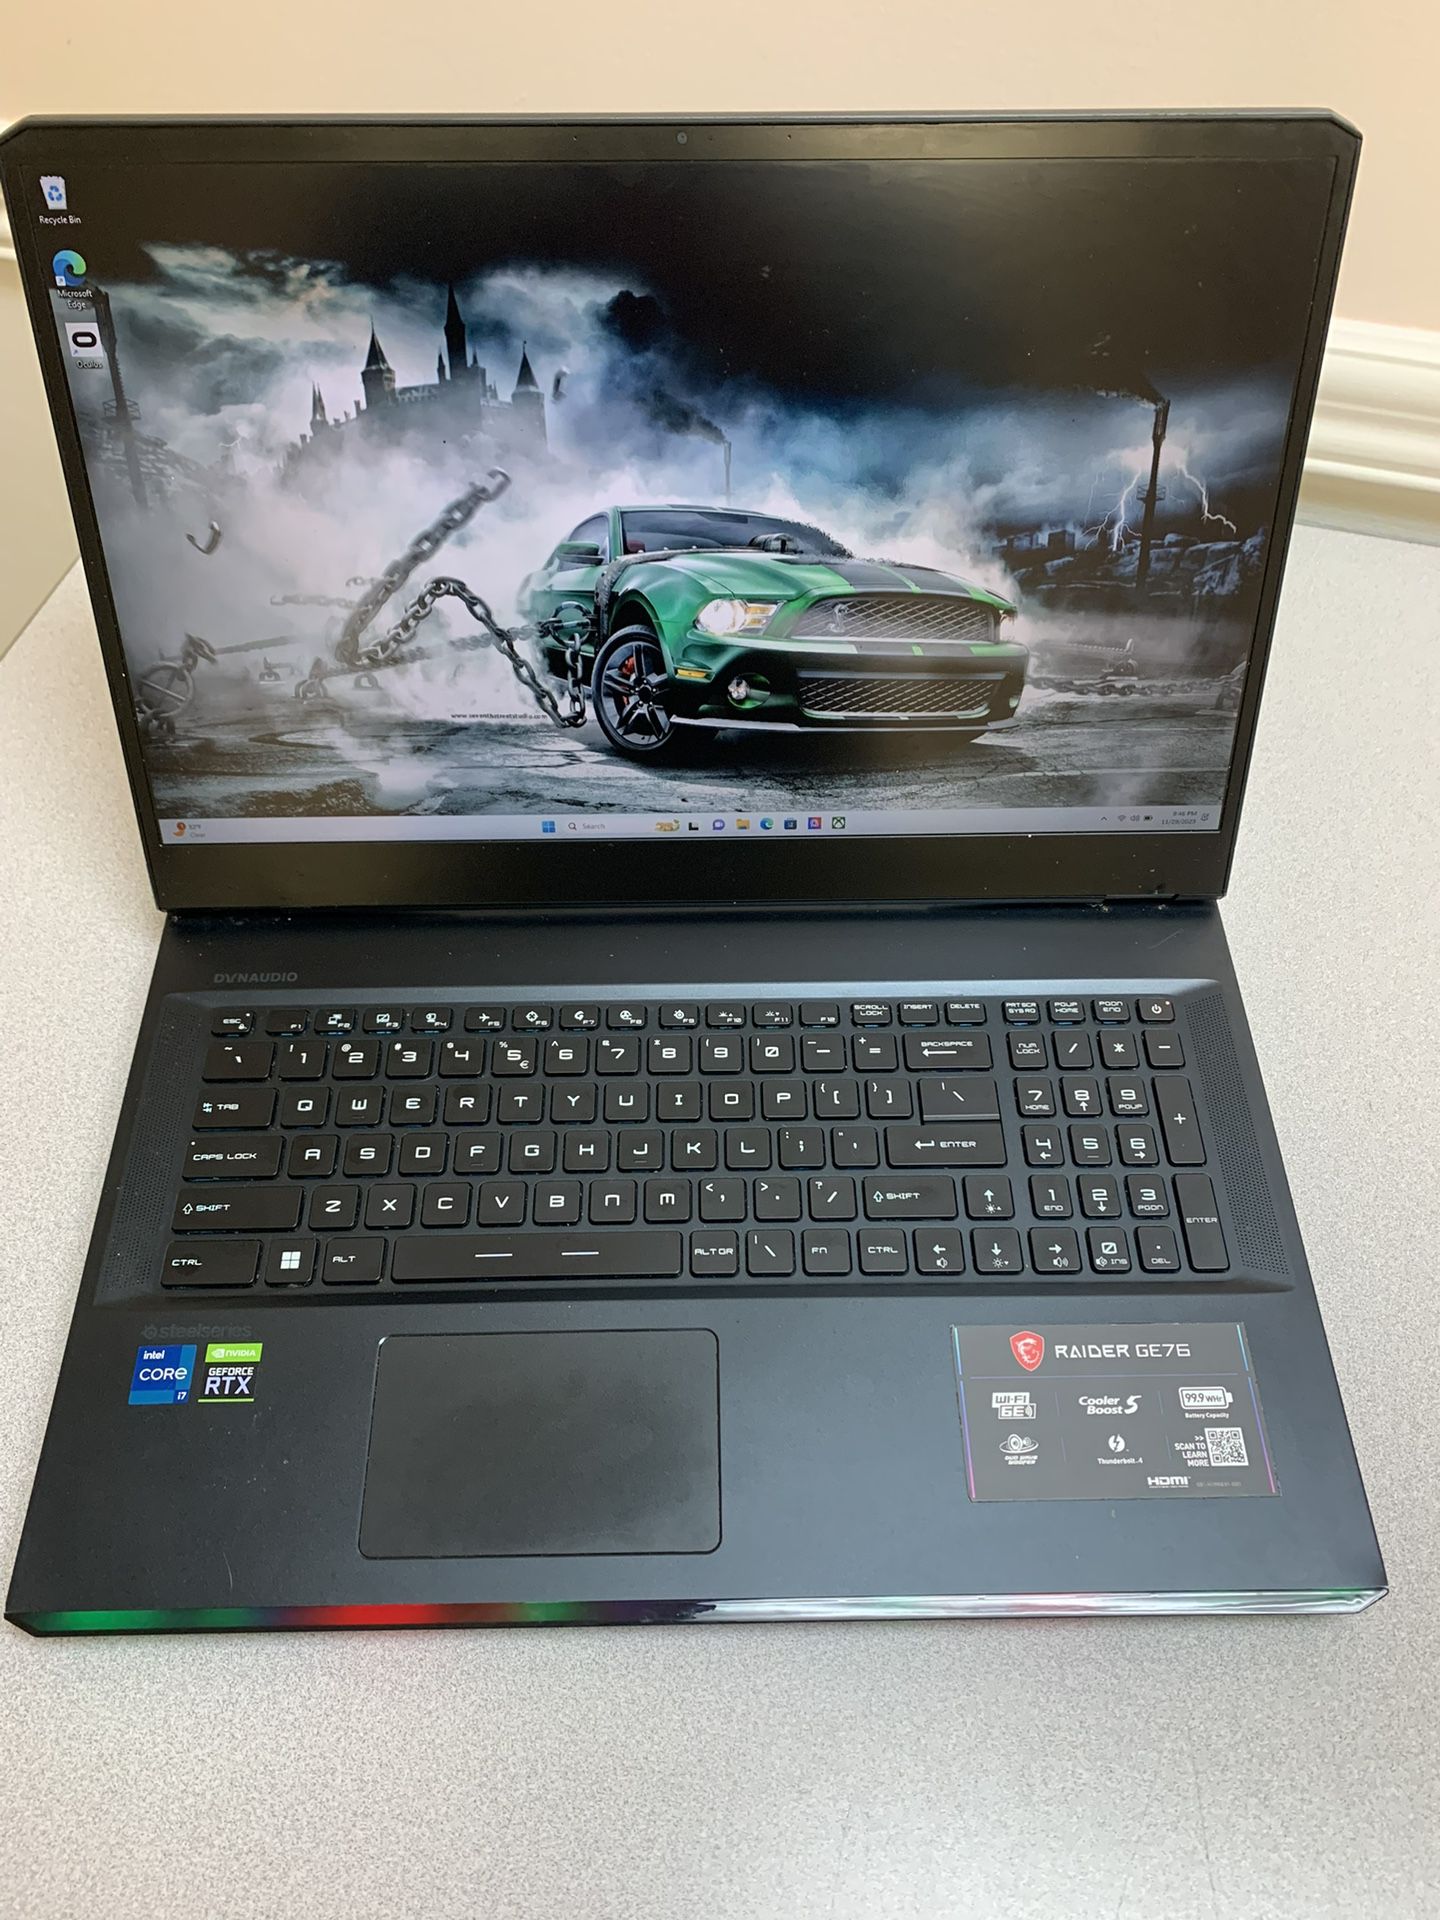 MSI Gaming Laptop 12th Generation 